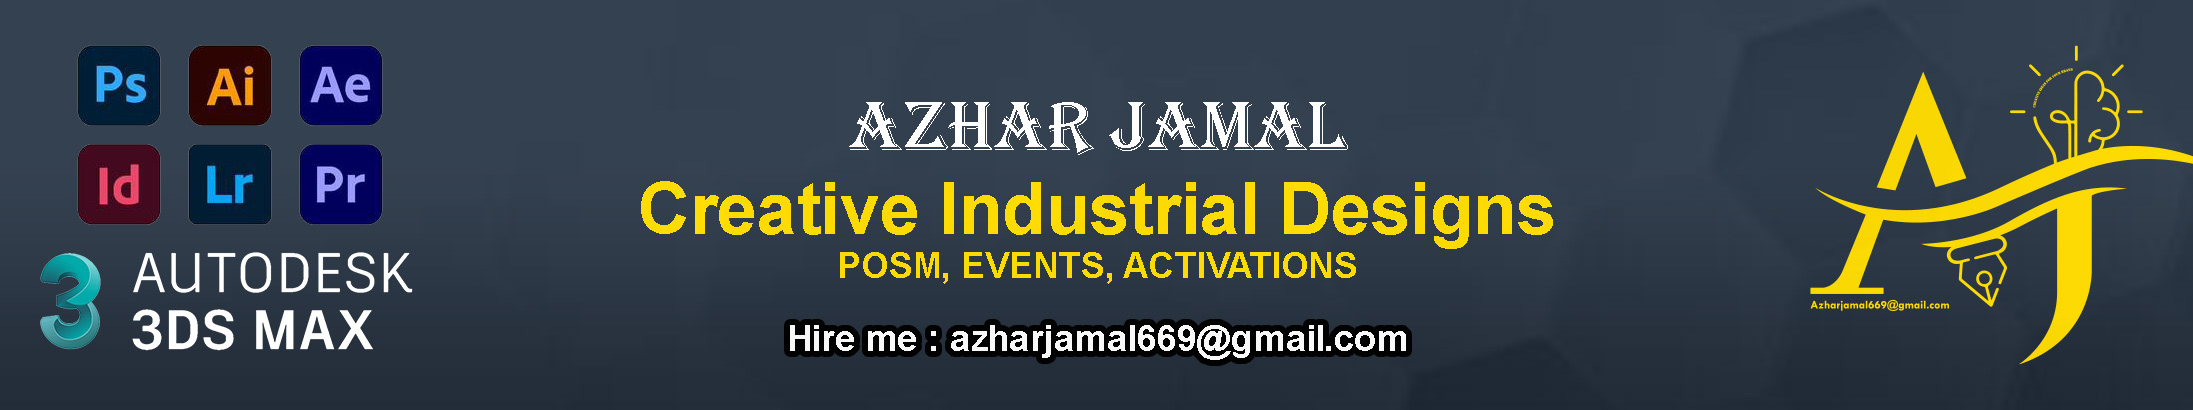 Azhar Jamal's profile banner